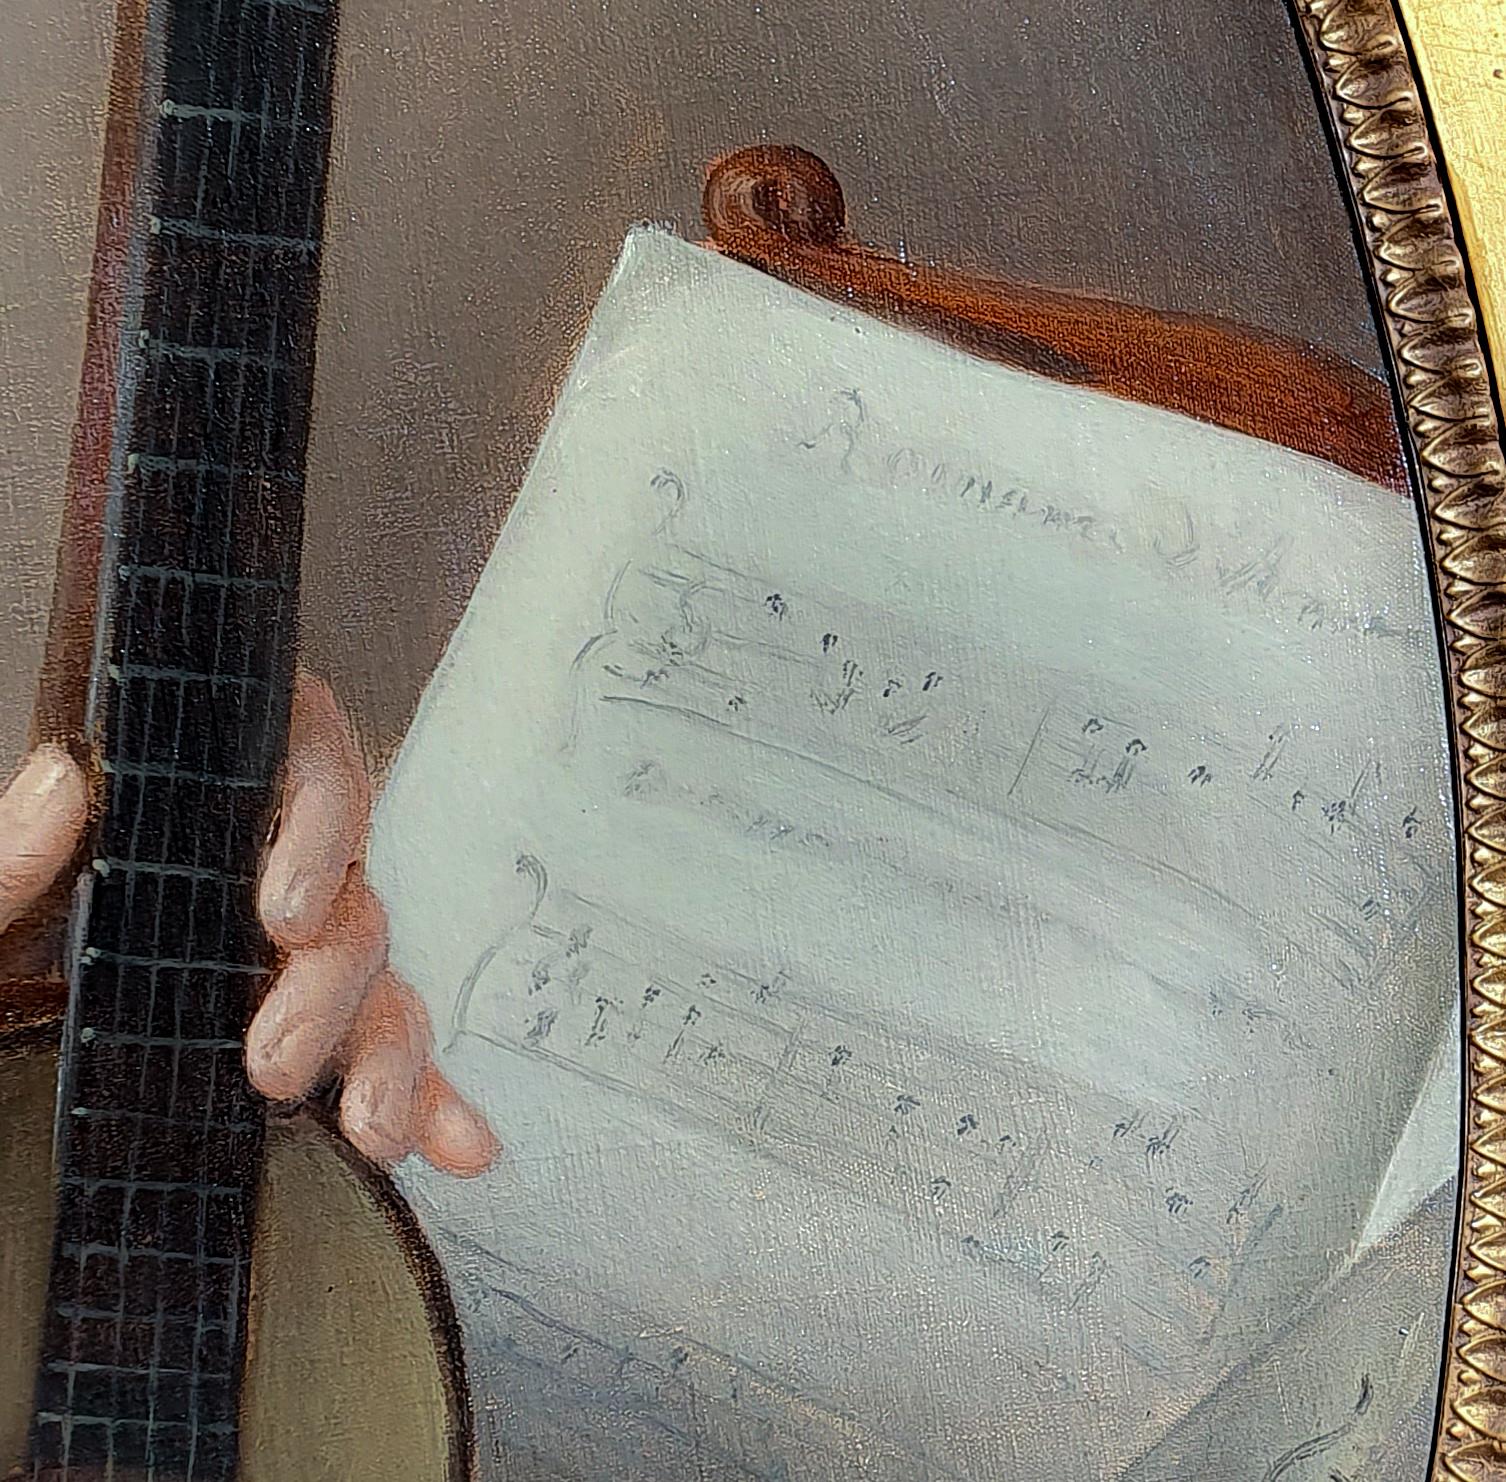 18th century guitar